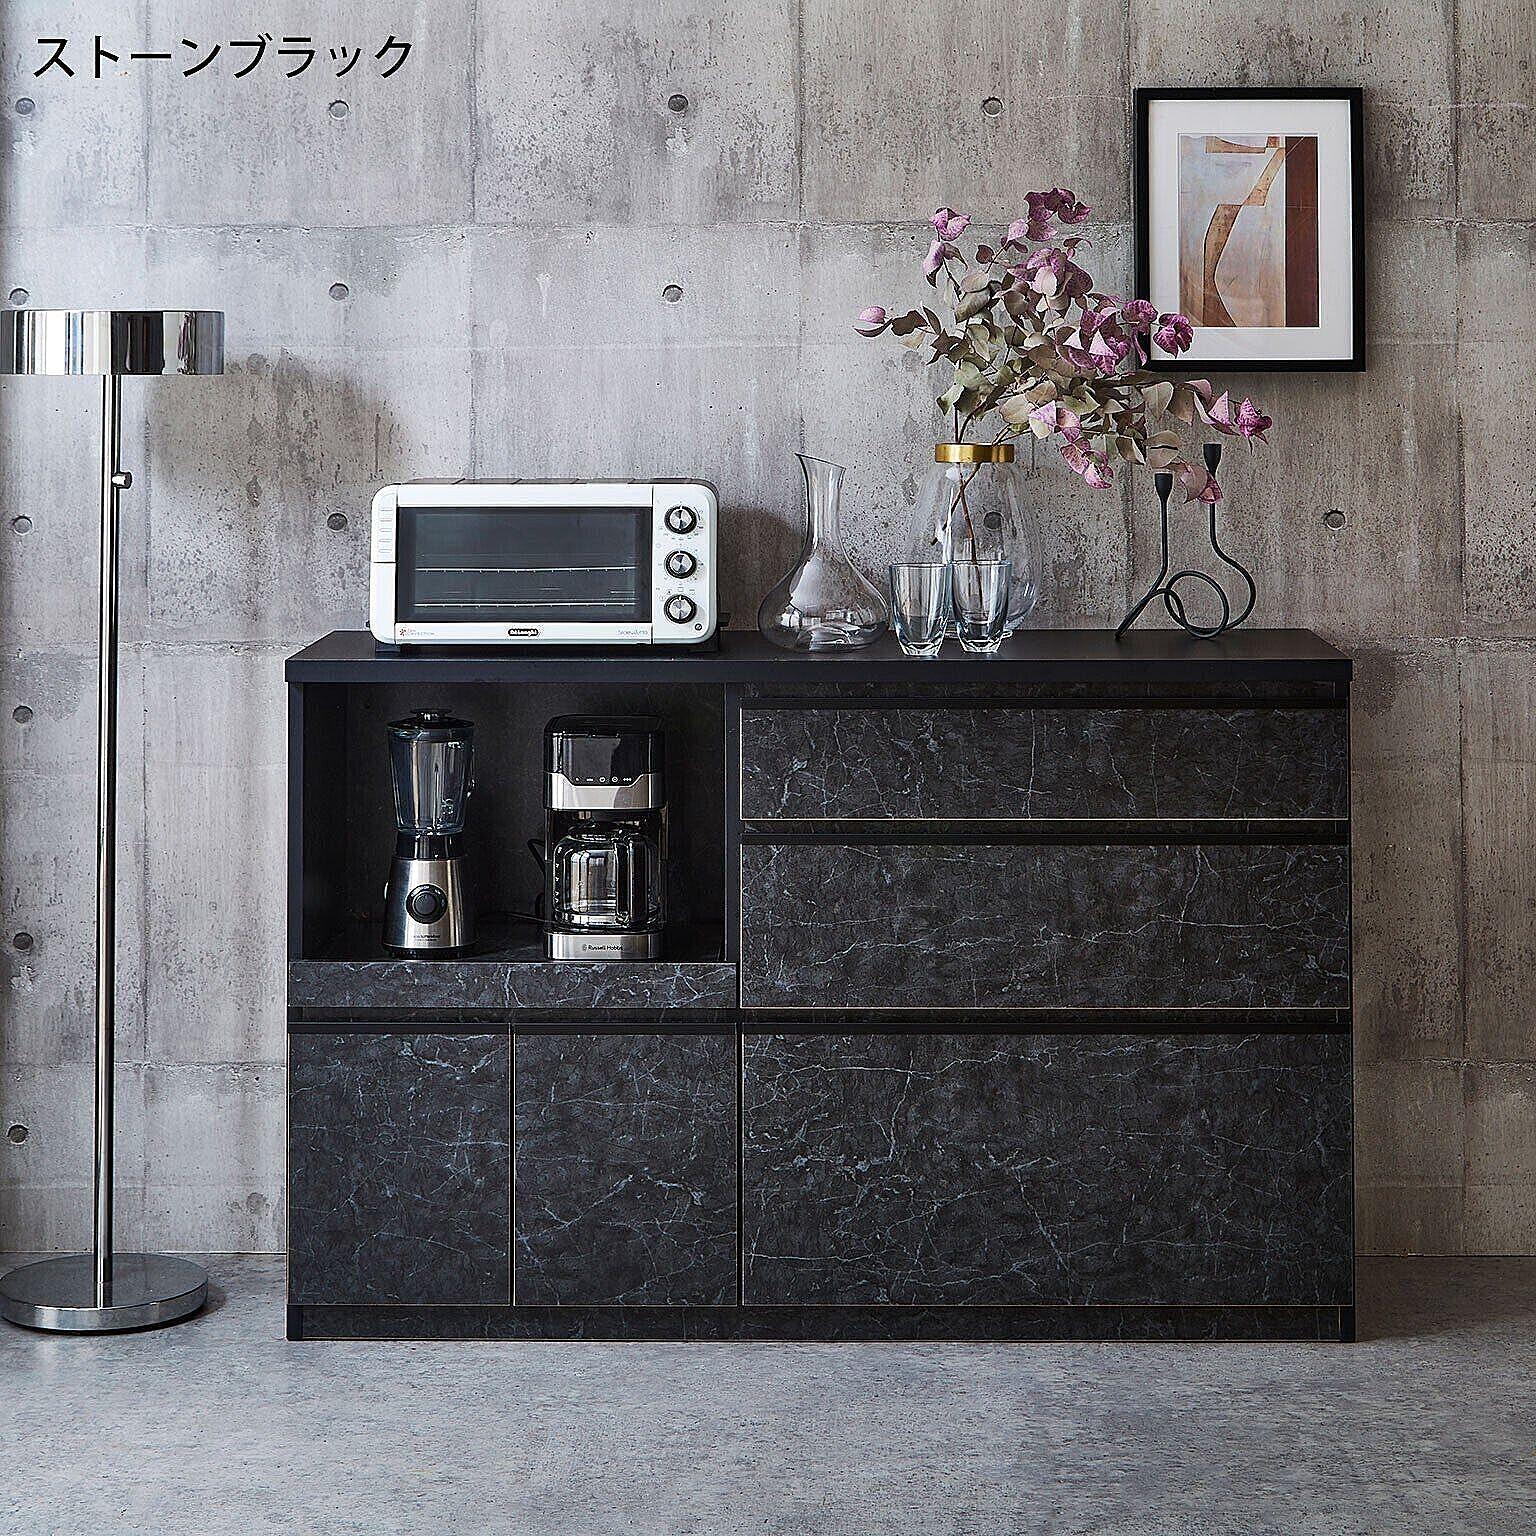 キッチンカウンター 幅139.1cm キッチン収納 レンジ台 完成品 日本製